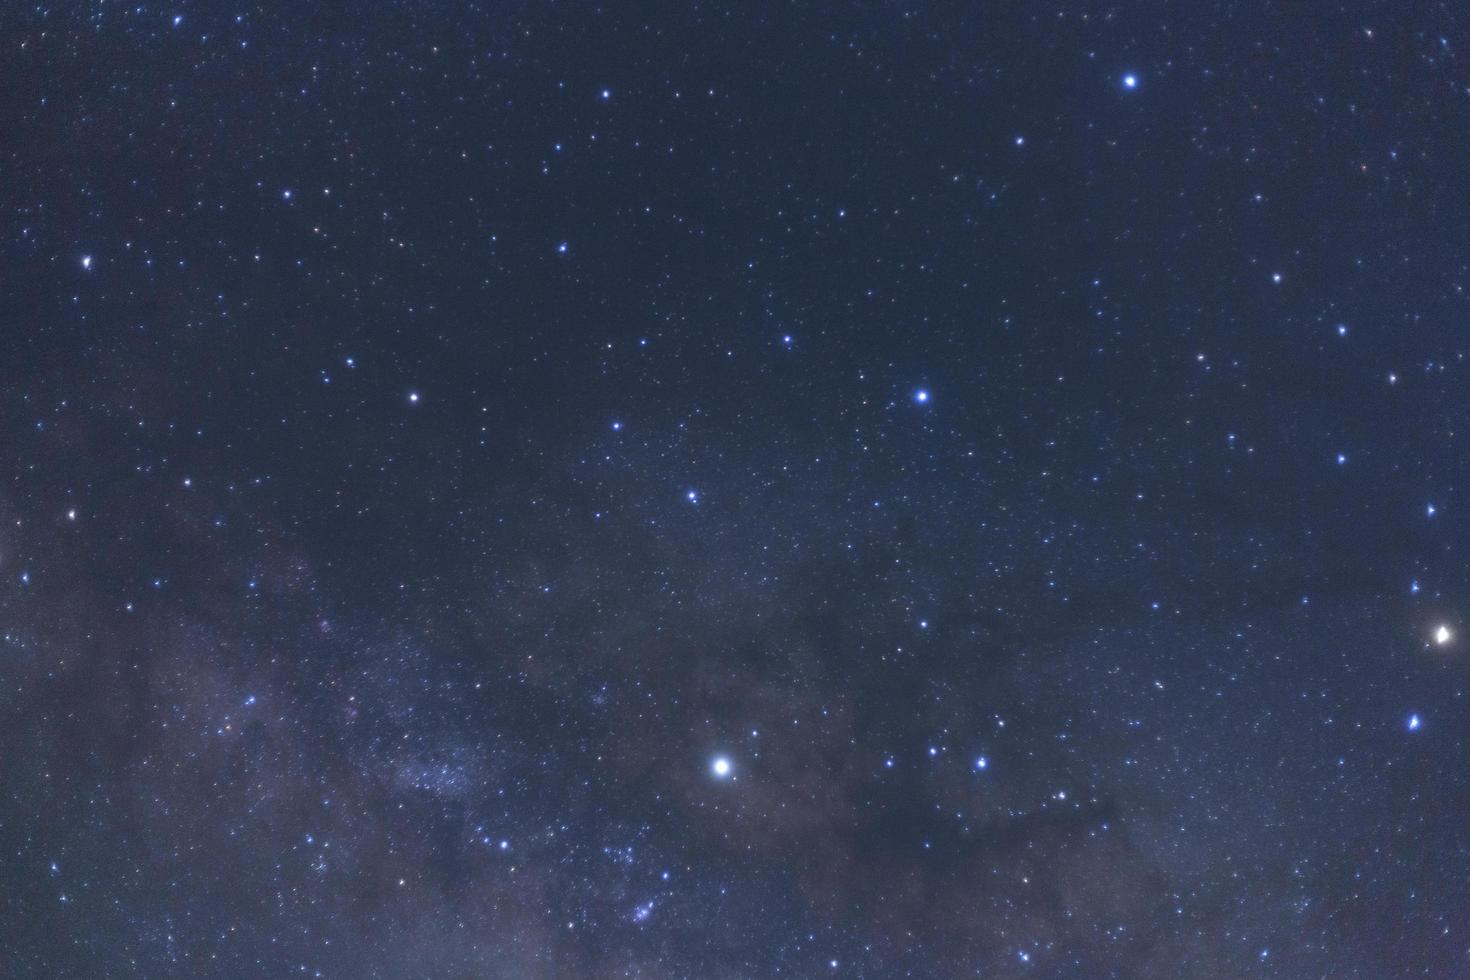 galassia della via lattea con stelle e polvere spaziale nell'universo foto